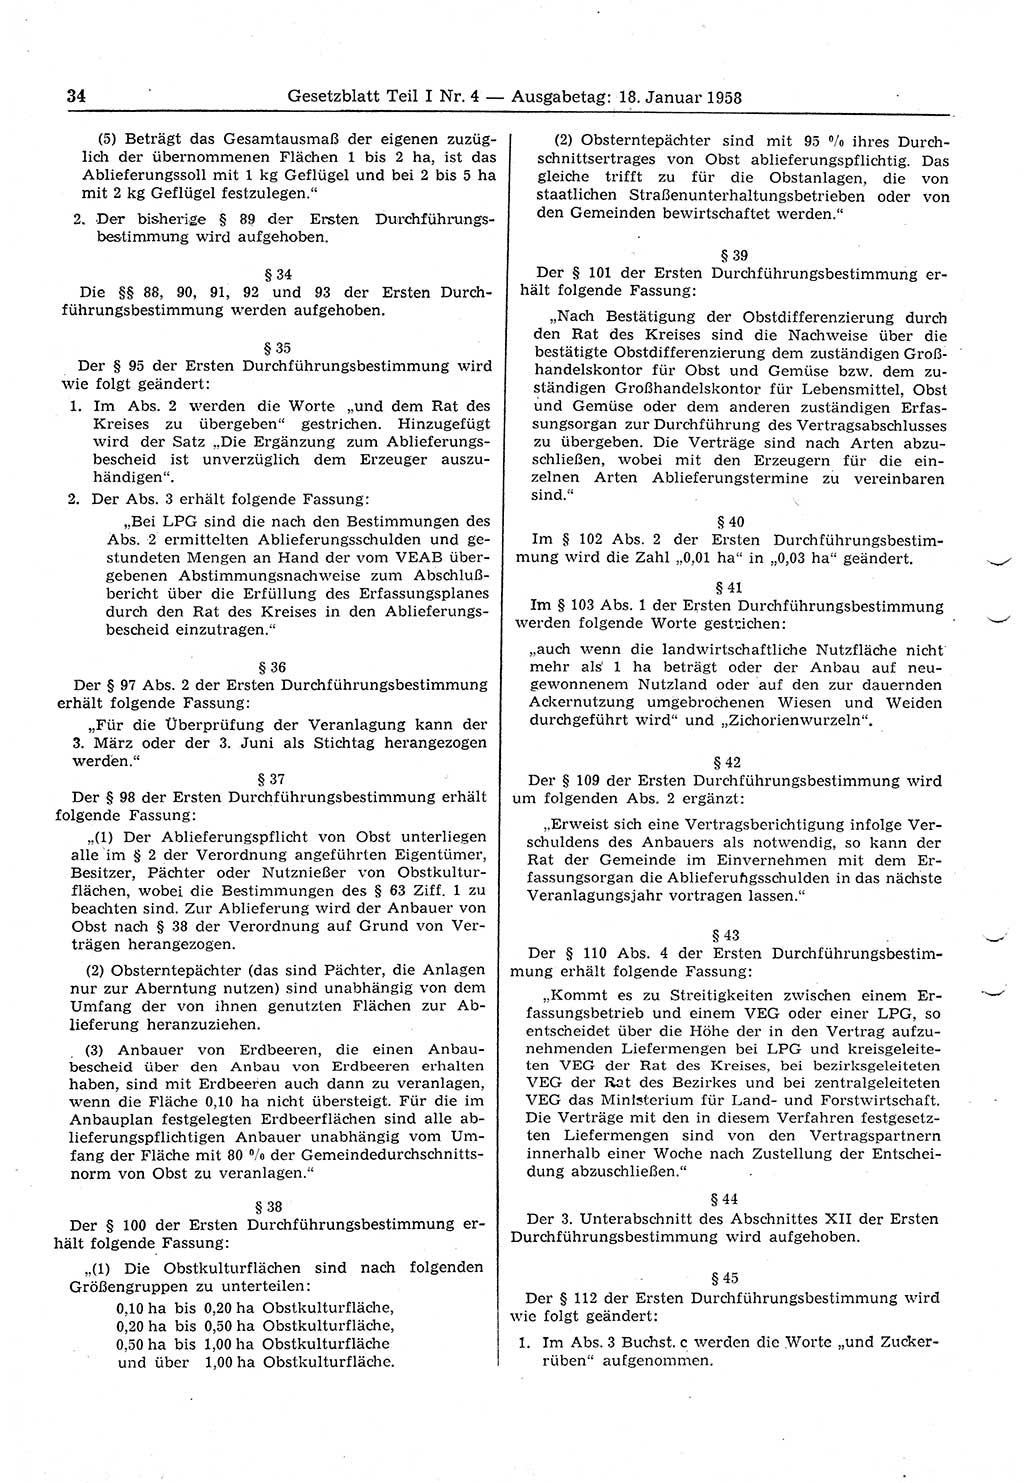 Gesetzblatt (GBl.) der Deutschen Demokratischen Republik (DDR) Teil Ⅰ 1958, Seite 34 (GBl. DDR Ⅰ 1958, S. 34)